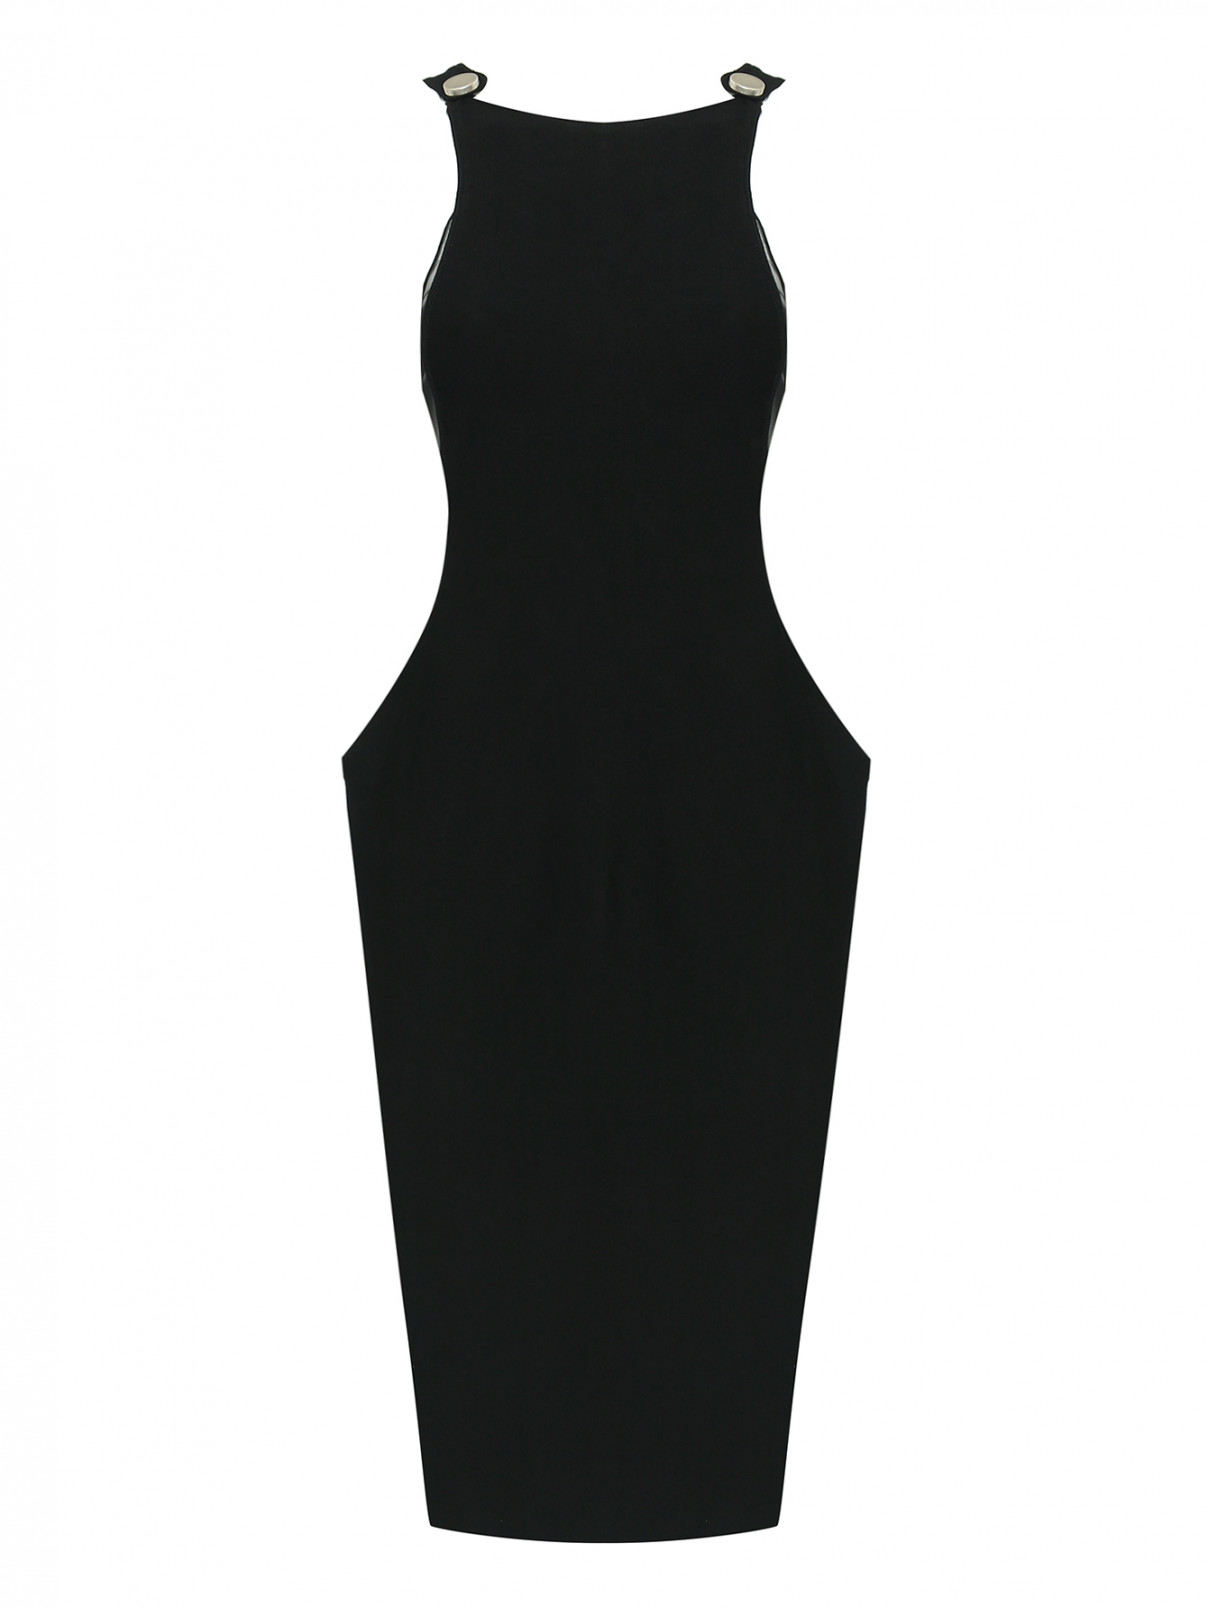 Трикотажное платье с прозрачными вставками Philosophy di Lorenzo Serafini  –  Общий вид  – Цвет:  Черный